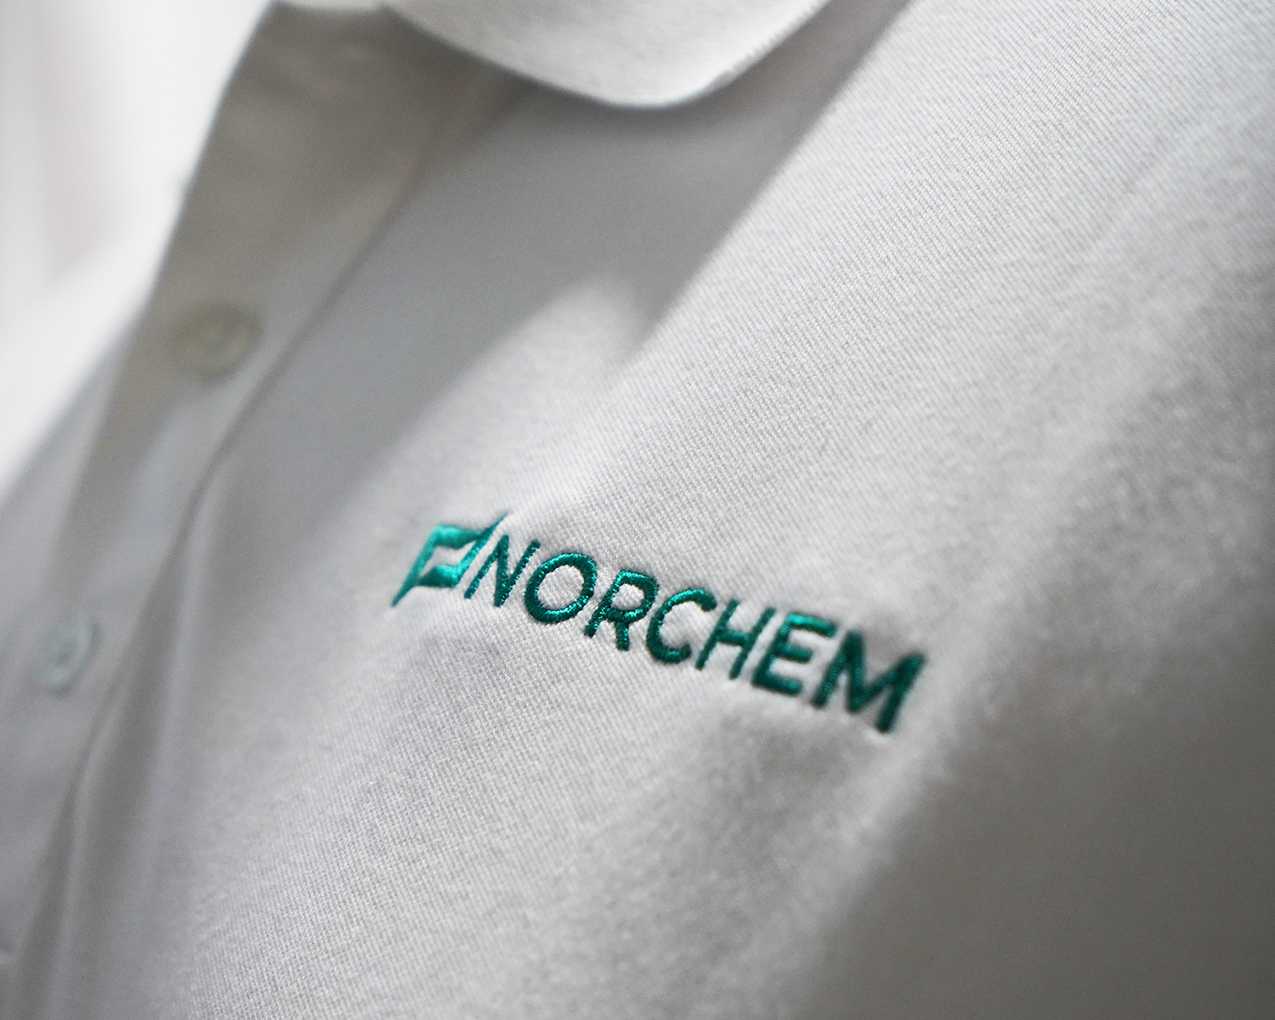 Norchem-Shirt-Textile-Square.jpg